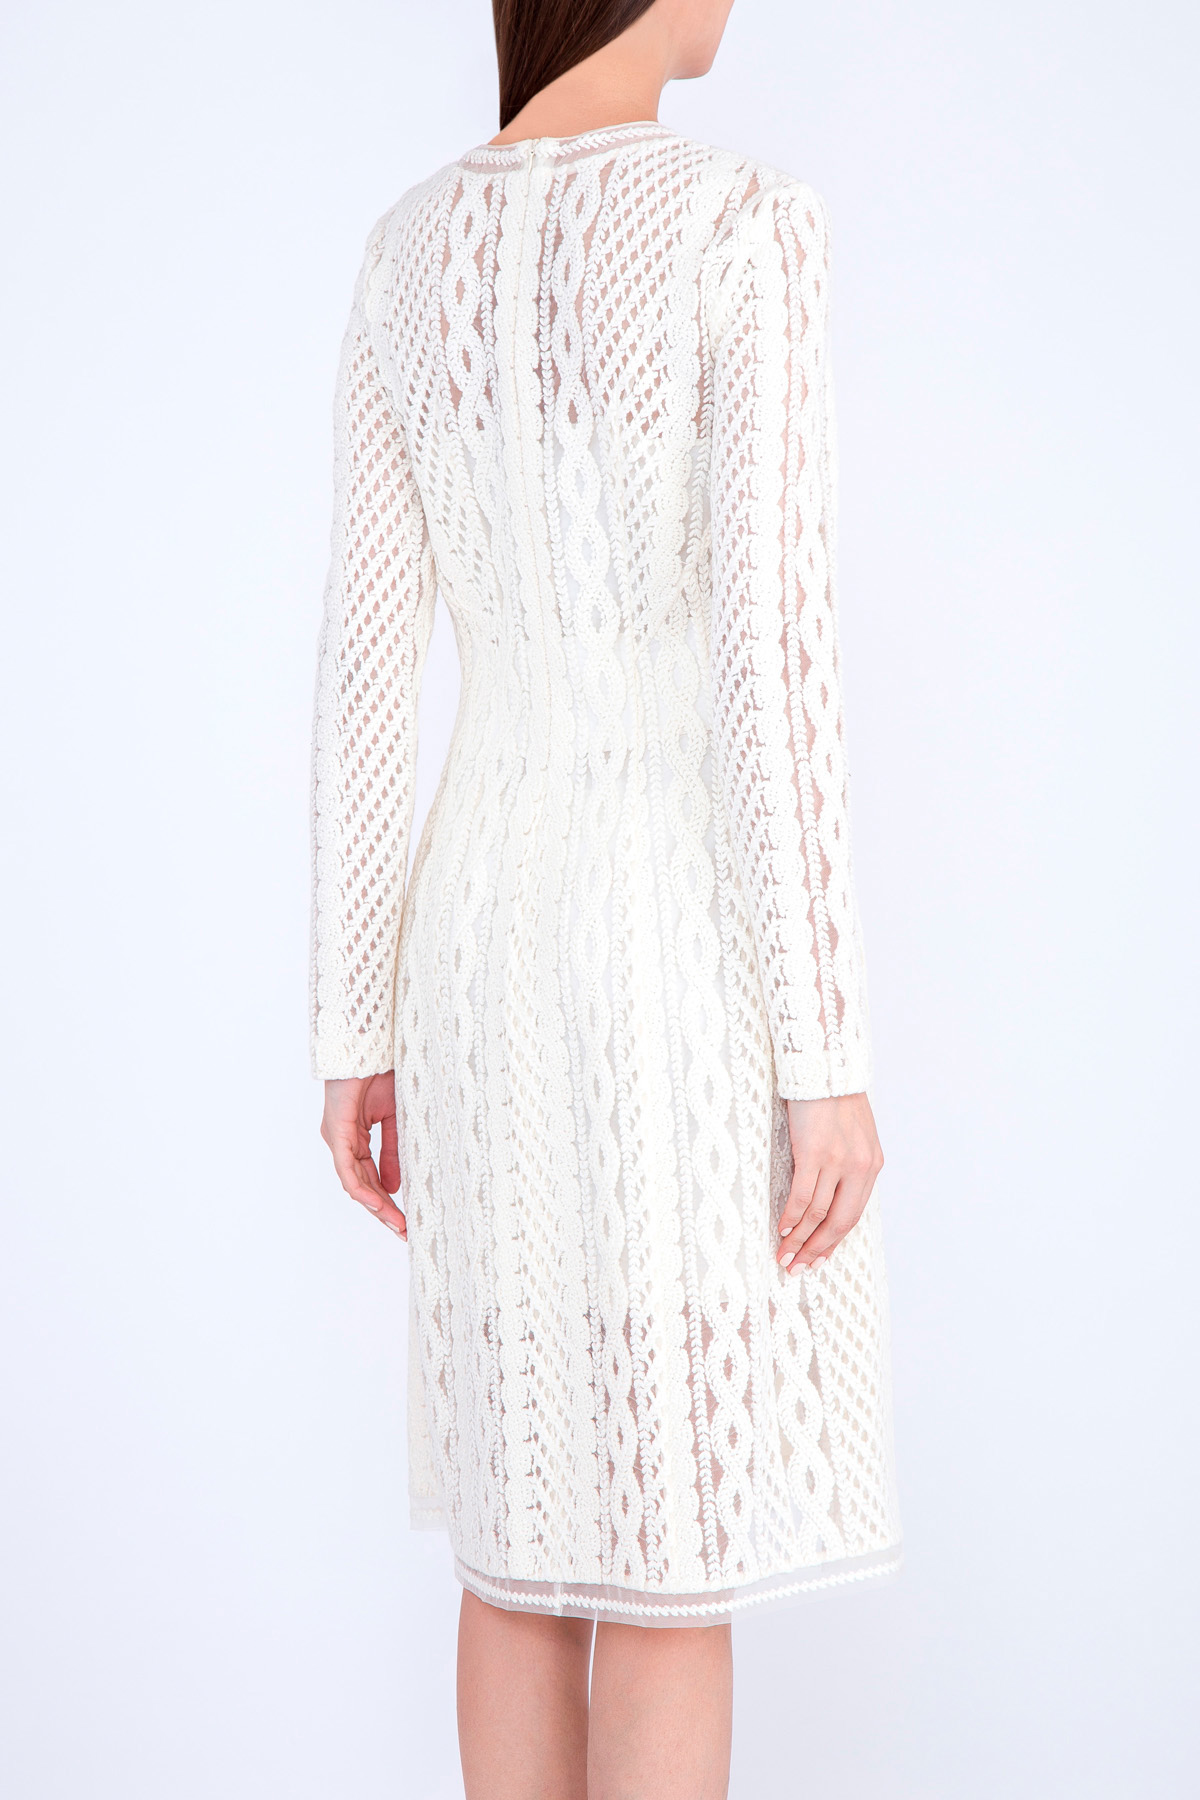 Двухслойное платье из вуали с ажурной вышивкой шерстяной нитью ERMANNO SCERVINO, цвет белый, размер 42 - фото 4